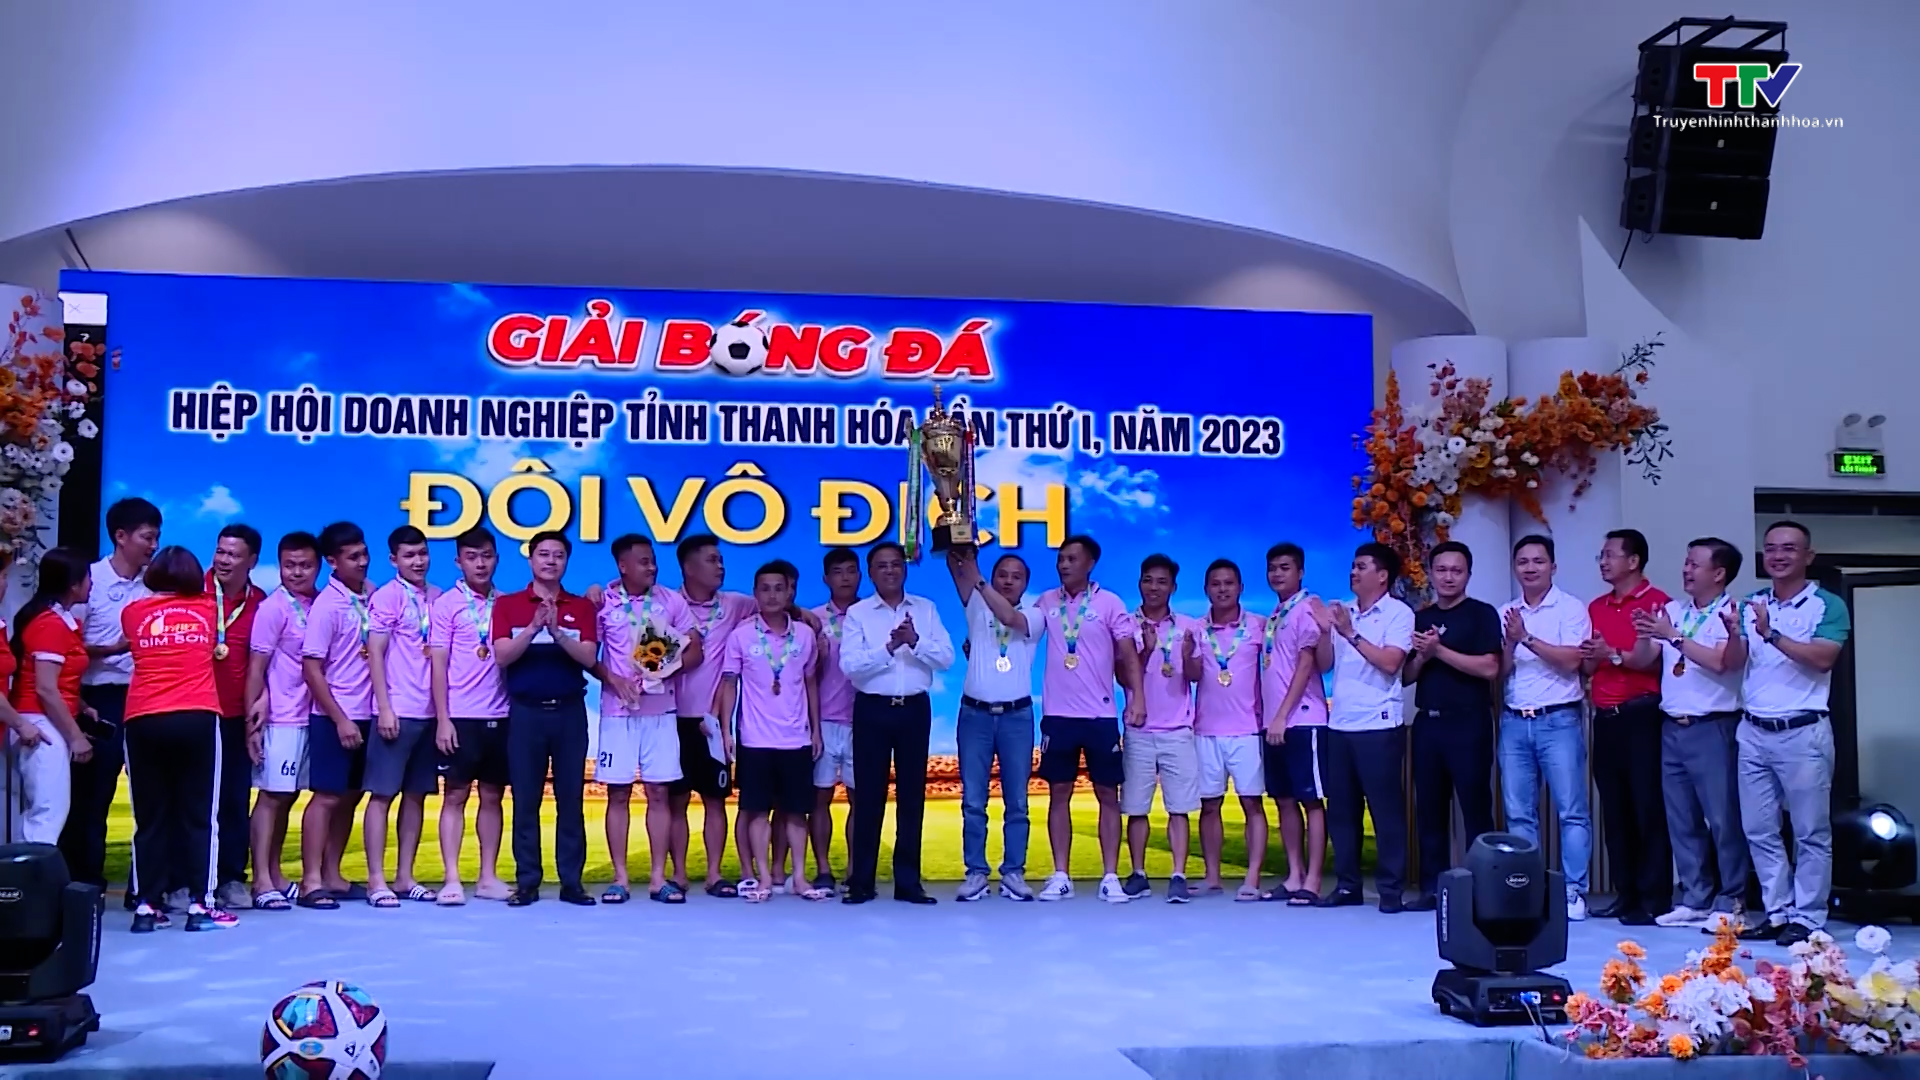 Bế mạc Giải bóng đá Hiệp hội Doanh nghiệp tỉnh Thanh Hóa lần thứ nhất, năm 2023 - Ảnh 3.